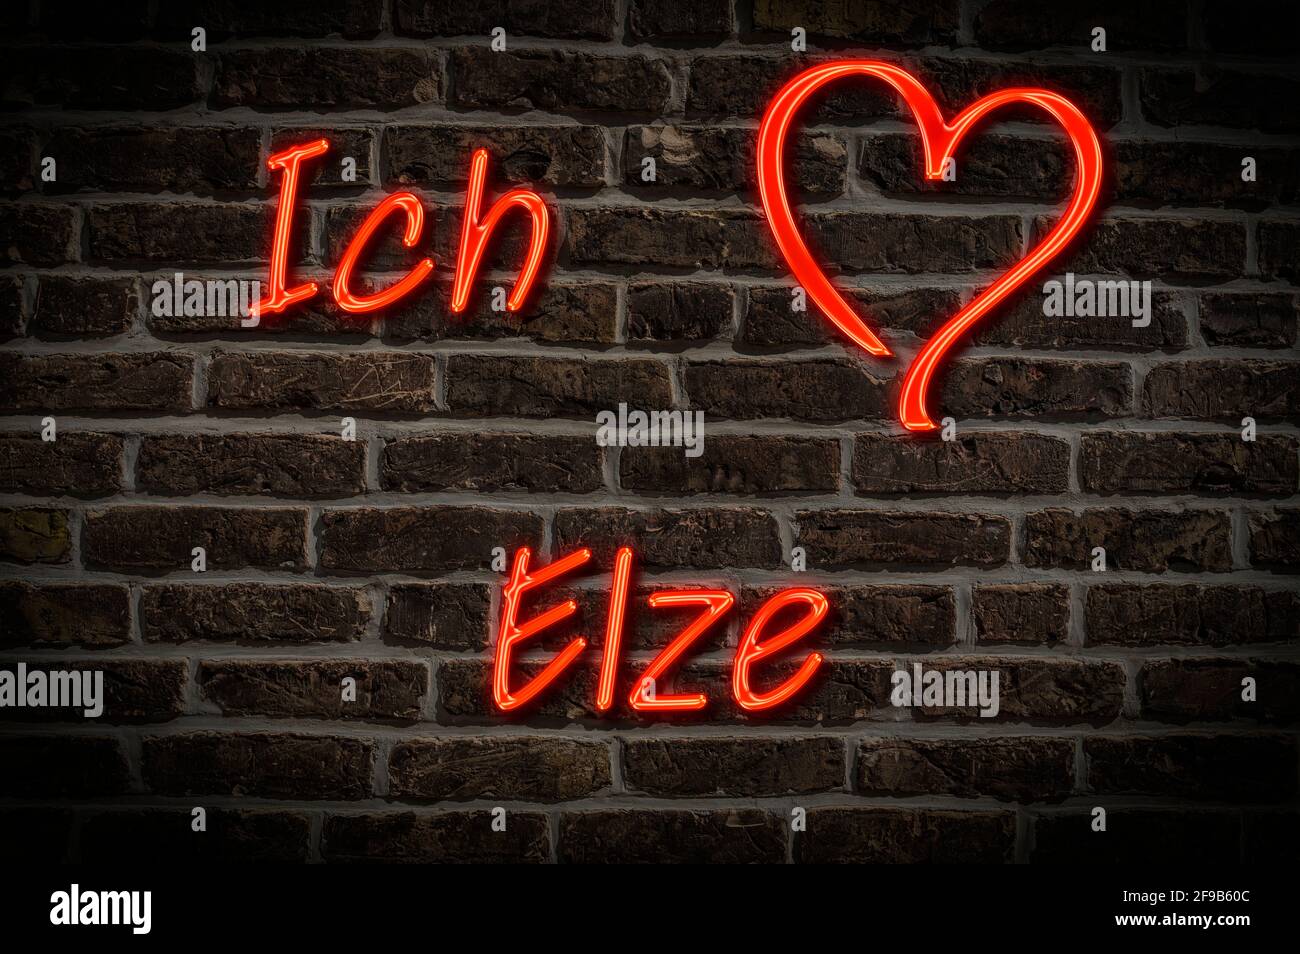 Leuchtreklame, Ich liebe Elze, Niedersachsen, Deutschland, Europa | Illuminated advertising, I love Elze, Lower Saxony, Germany, Europe Stock Photo